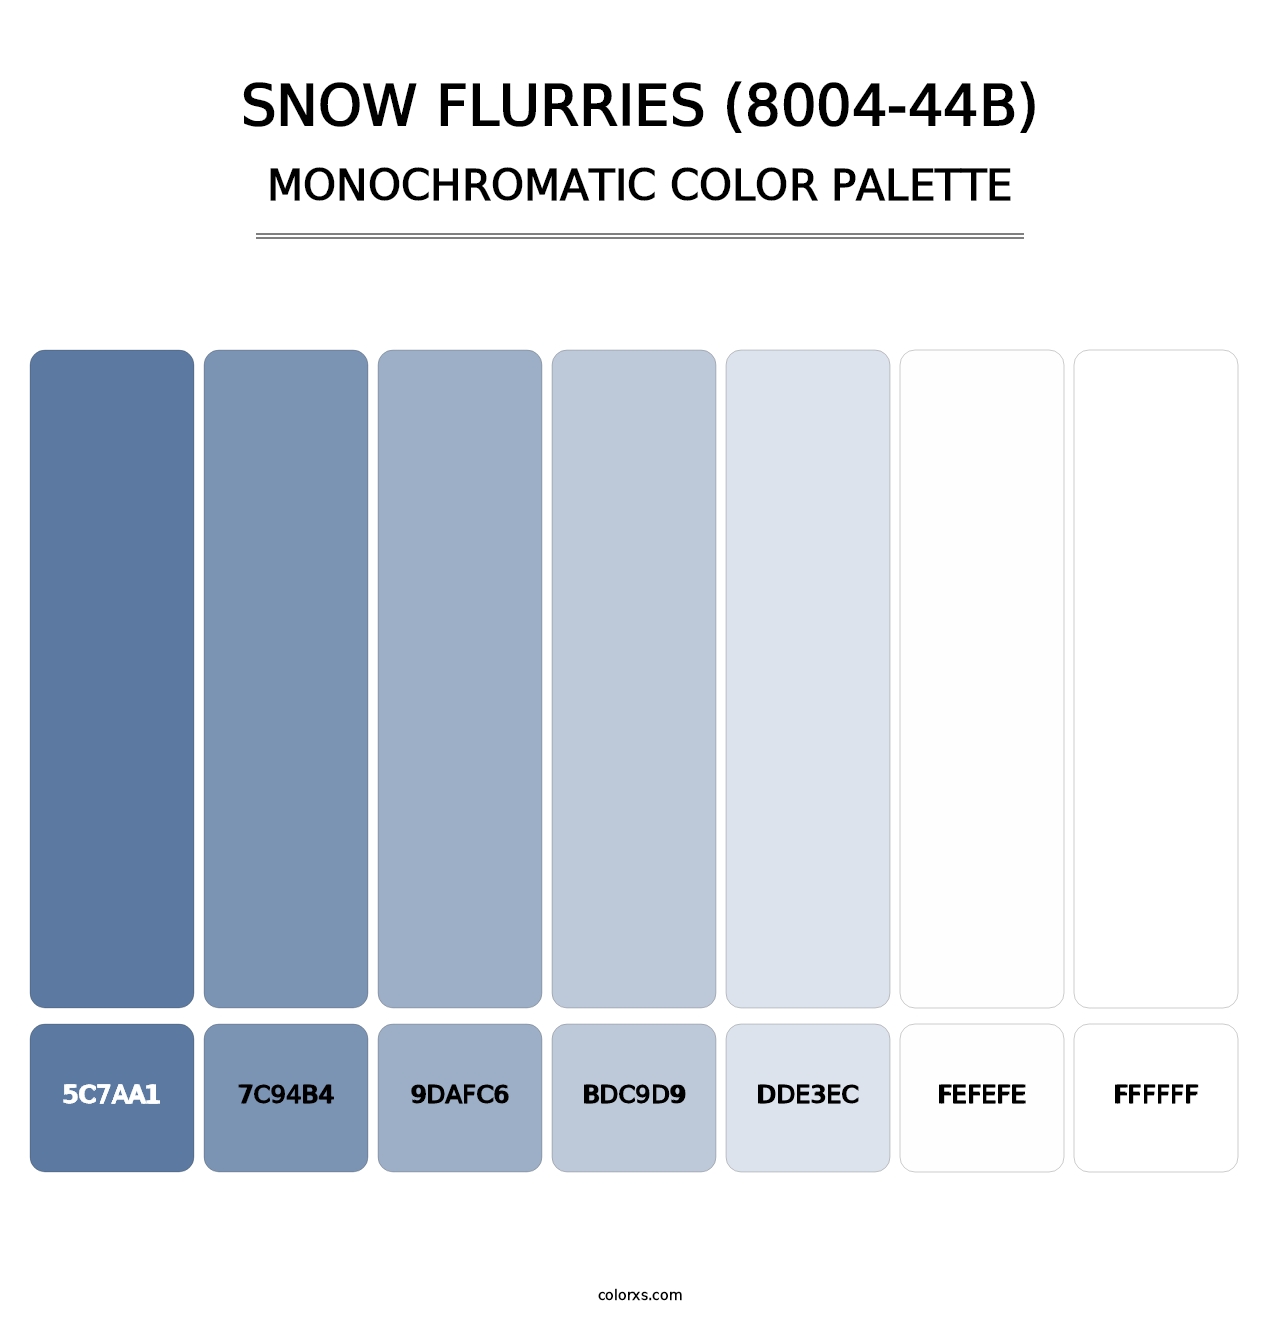 Snow Flurries (8004-44B) - Monochromatic Color Palette